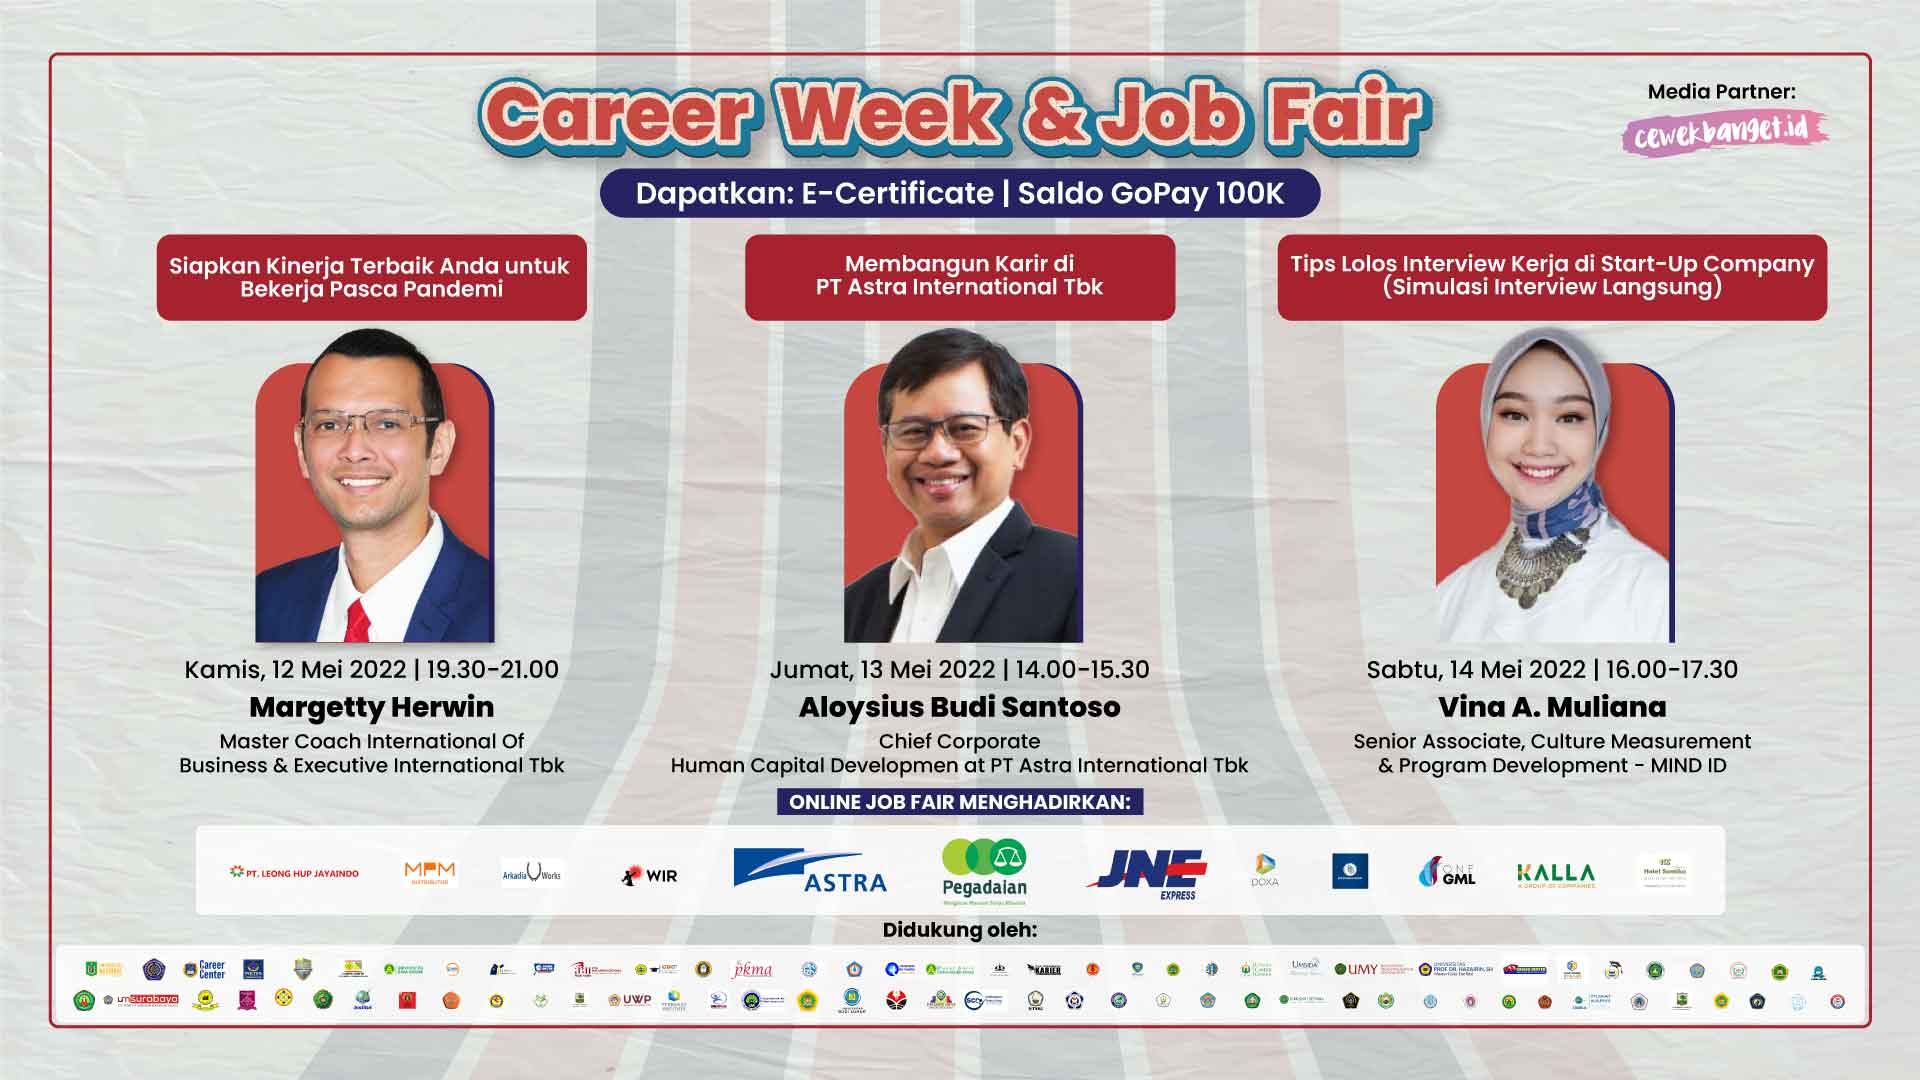 Career Week & Job Fair